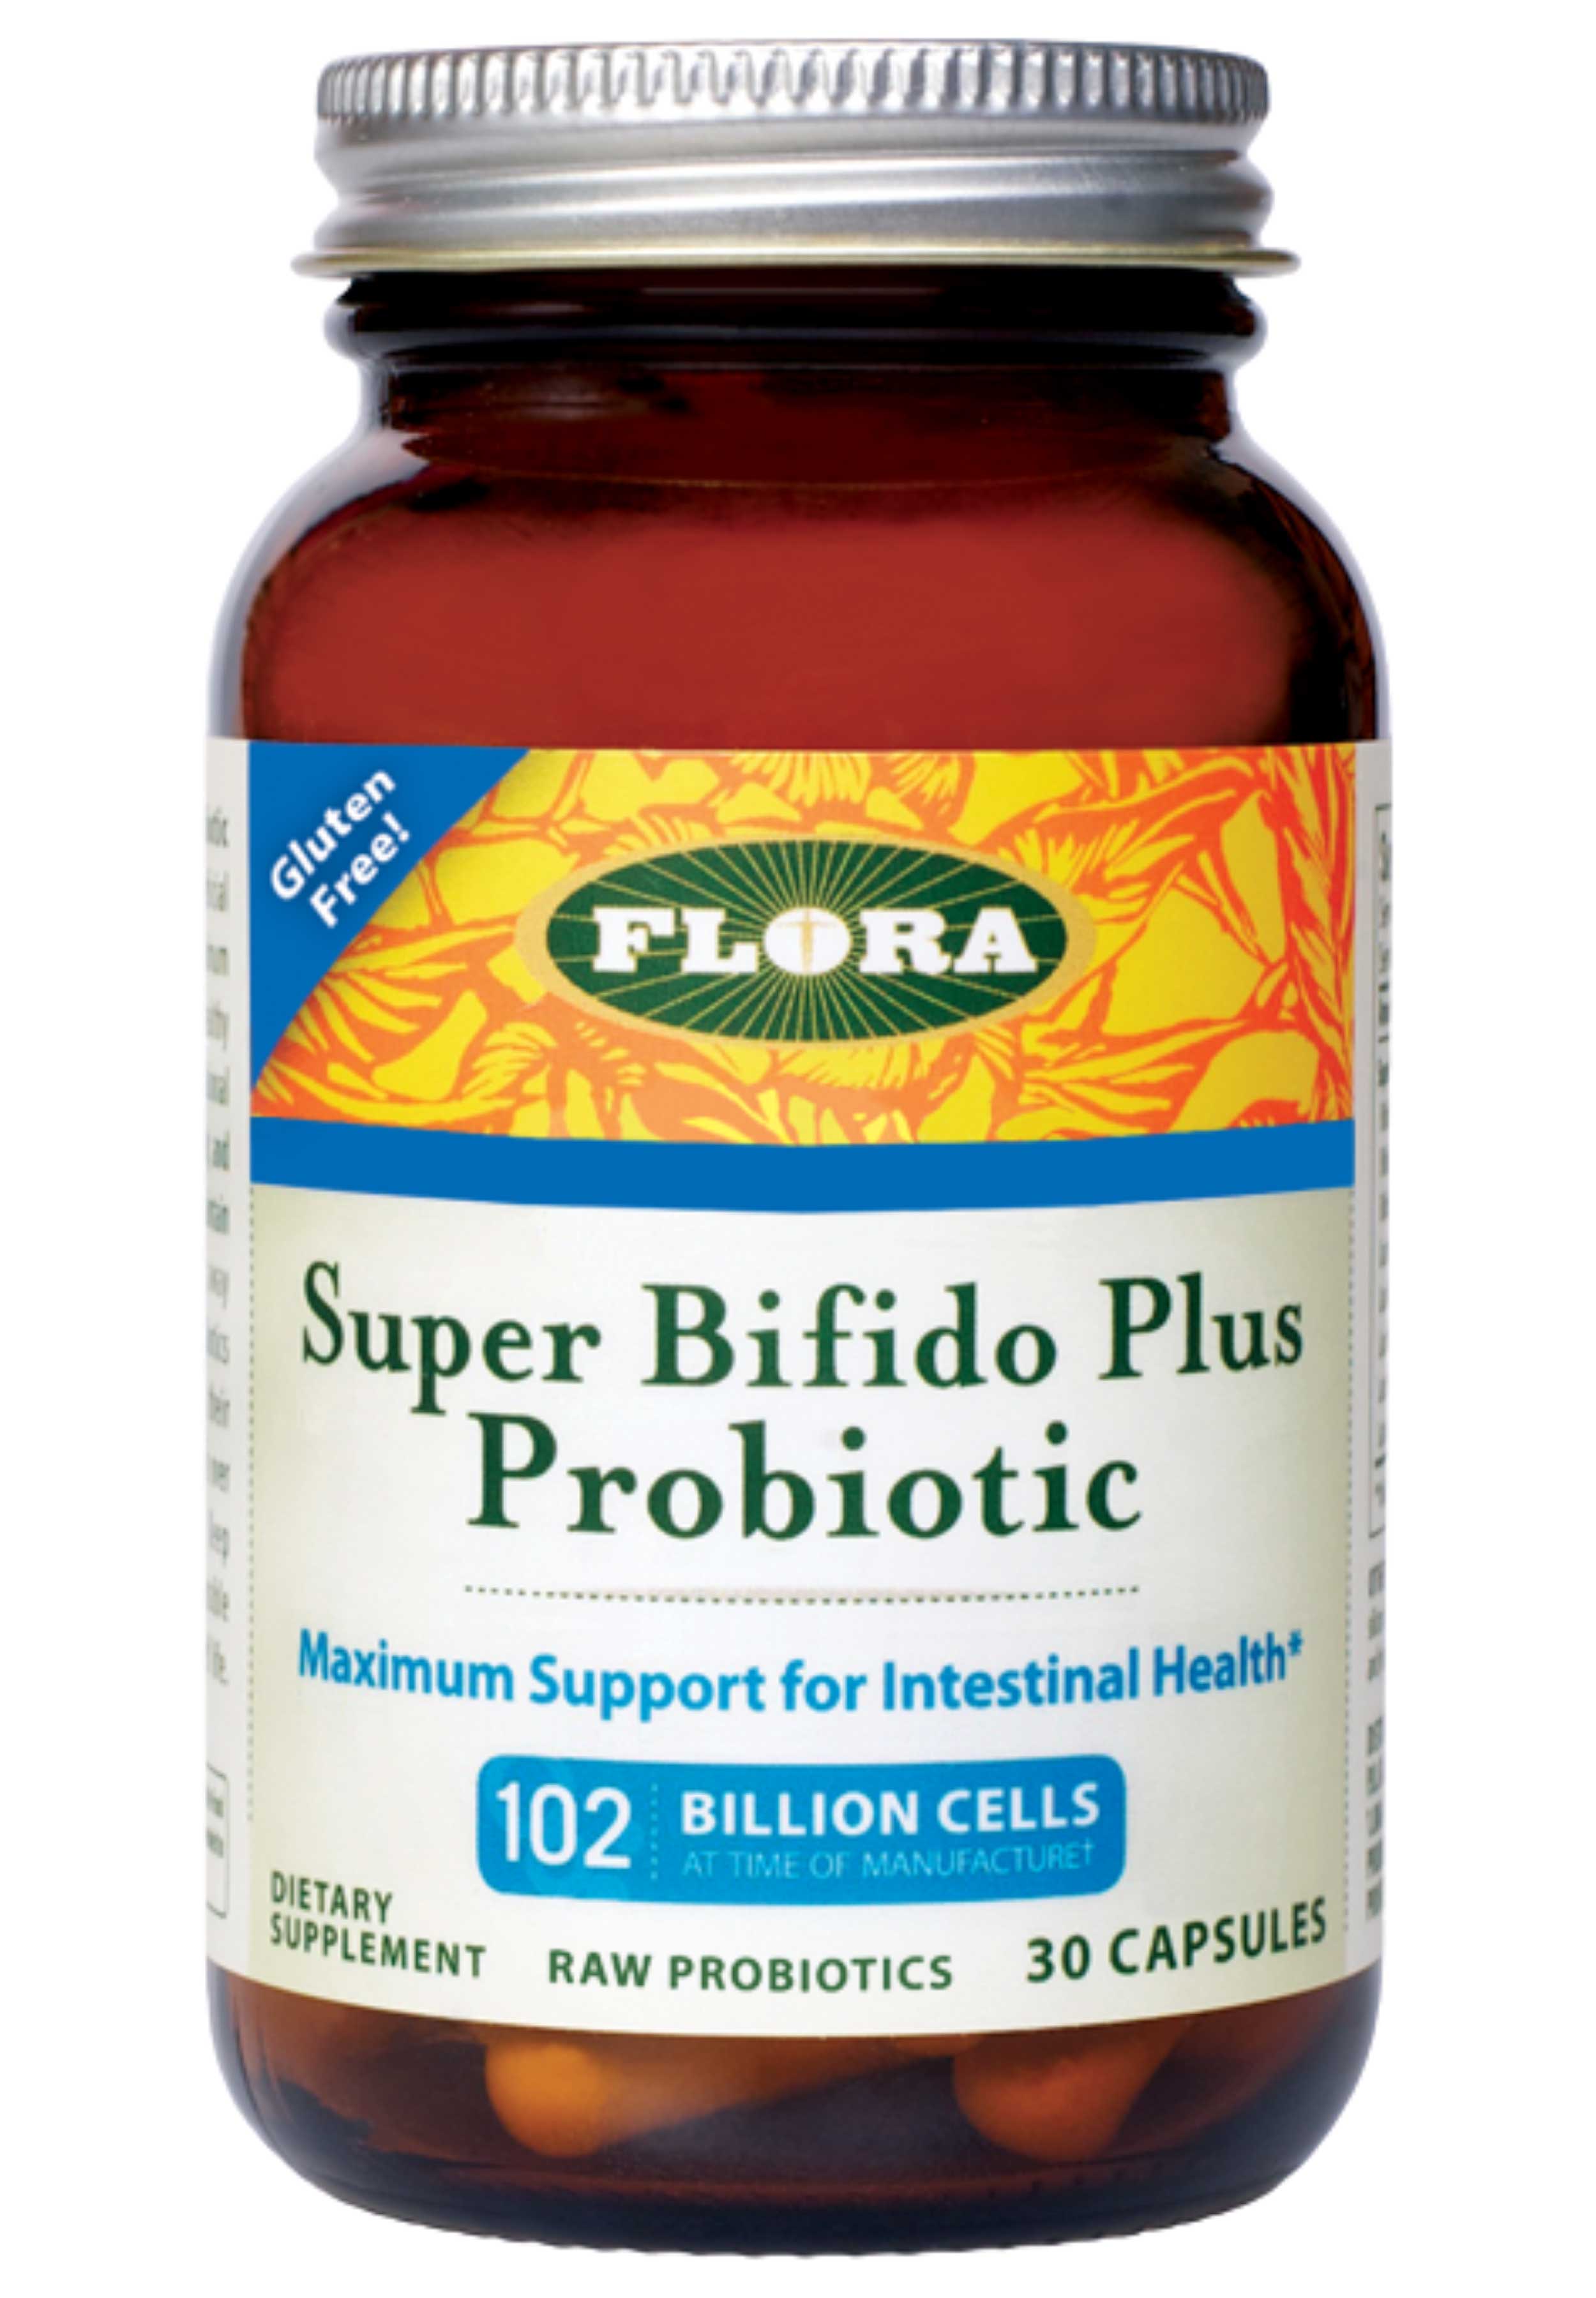 Flora Super Bifido Plus Probiotic